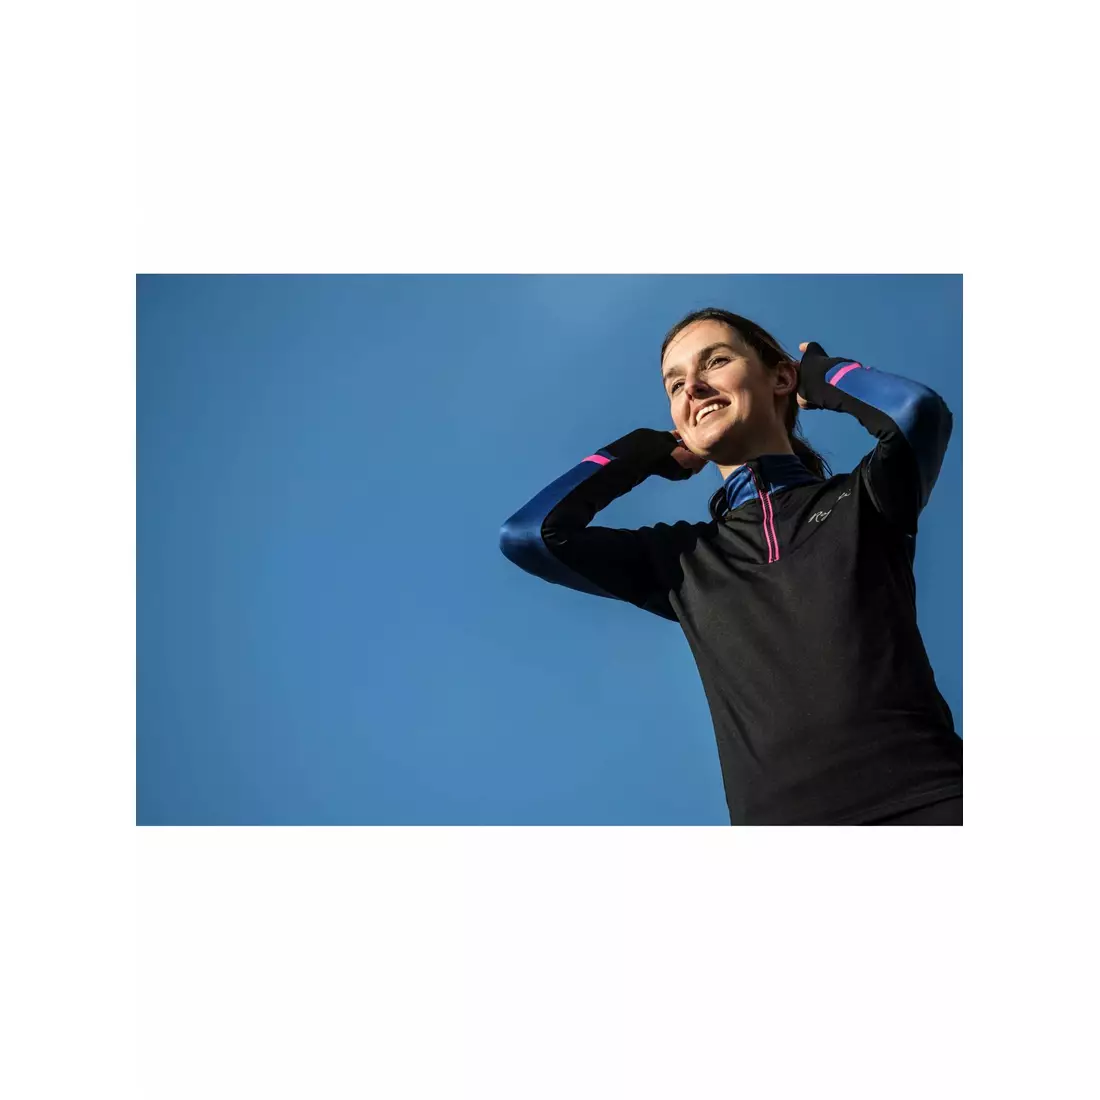 Rogelli COSMIC Damen-Laufshirt Langarm schwarz-blau rosa 840.666